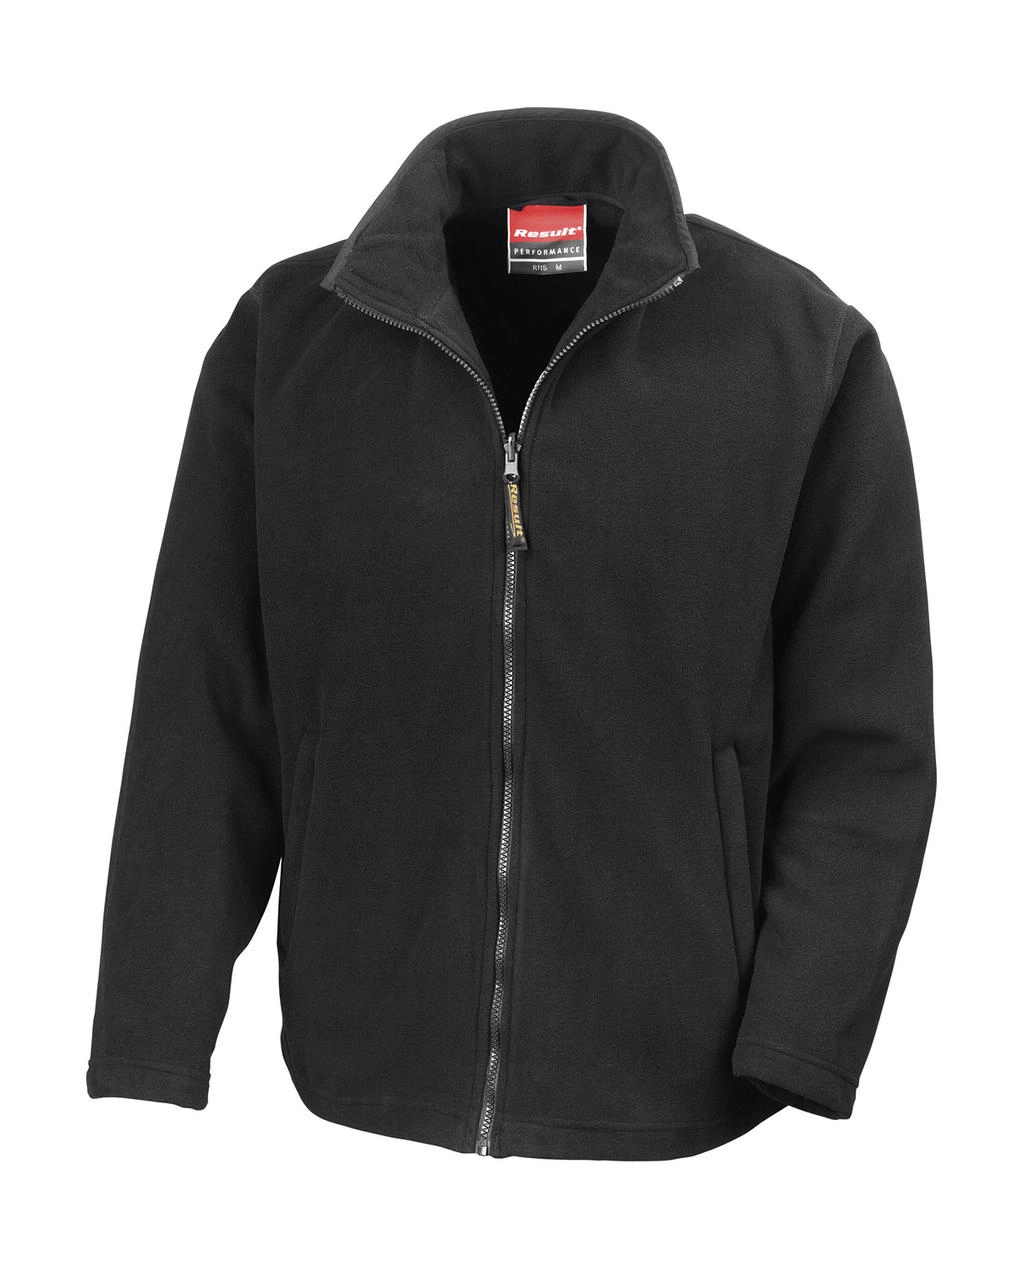 Horizon High Grade Microfleece Jacket zum Besticken und Bedrucken in der Farbe Black mit Ihren Logo, Schriftzug oder Motiv.